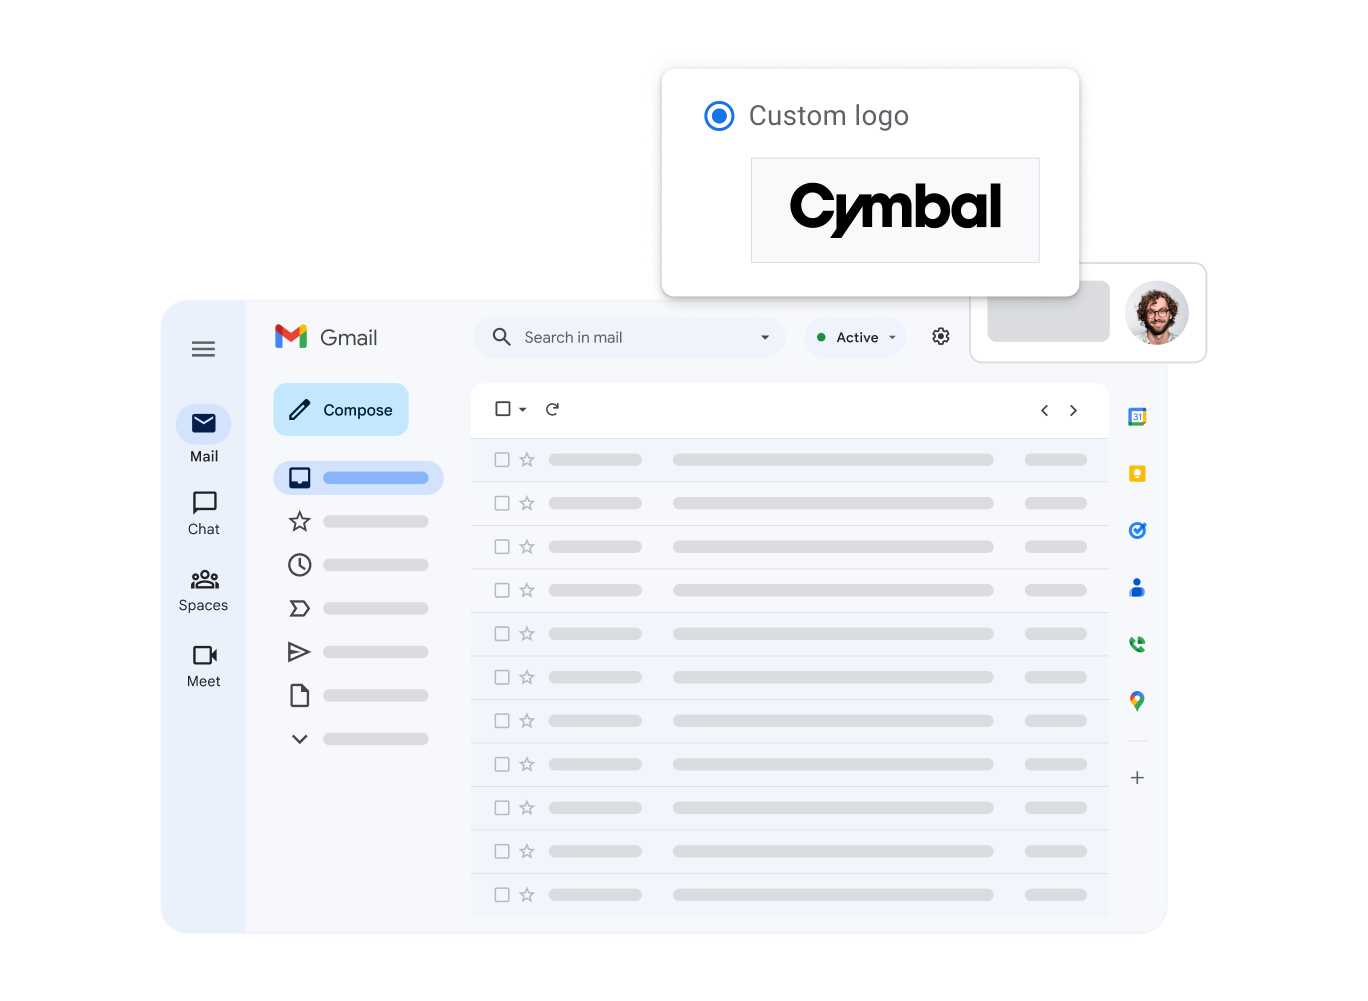 Eine stilisierte Ansicht der Gmail-Oberfläche mit dem benutzerdefinierten Logo des Kundenunternehmens im Vordergrund